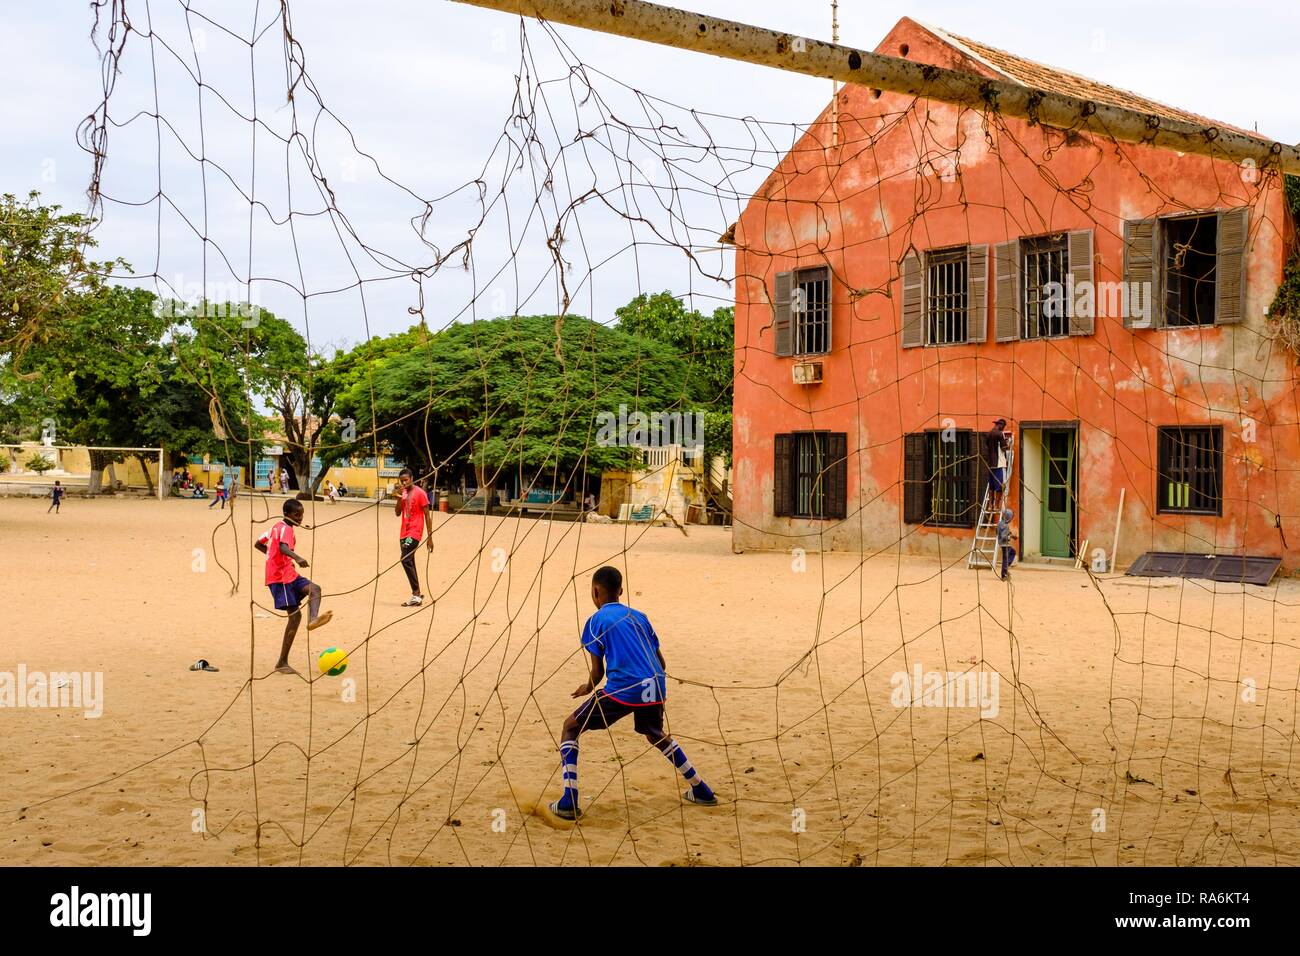 Les enfants jouent au football, à l'île de Gorée, Dakar, Sénégal Banque D'Images